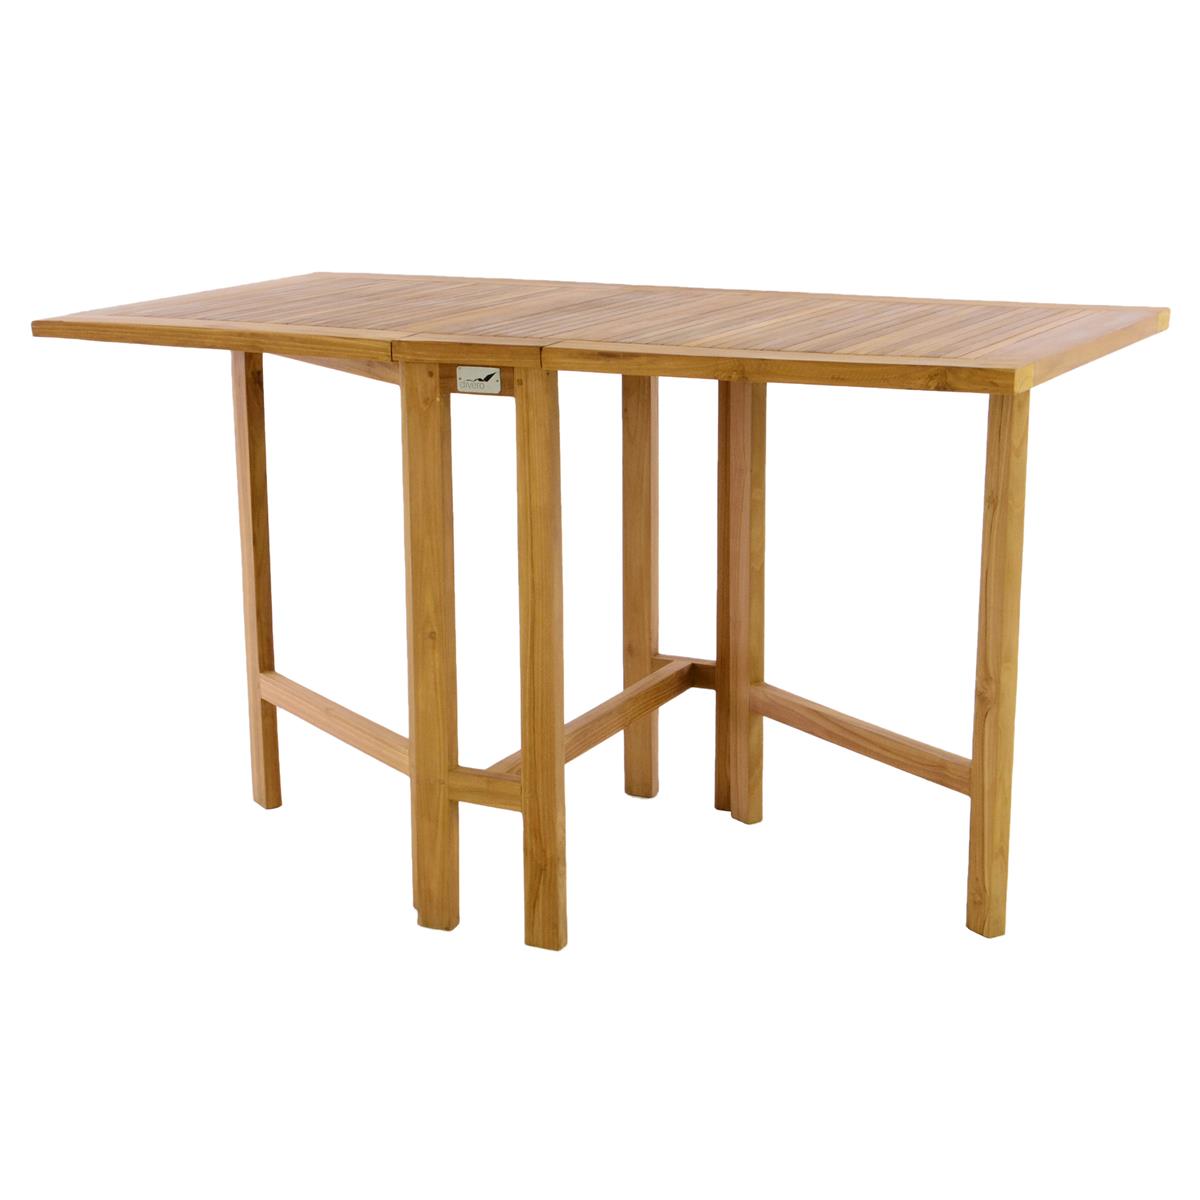 DIVERO Balkontisch Gartentisch Tisch Klapptisch Holz Teak behandelt 130x65cm